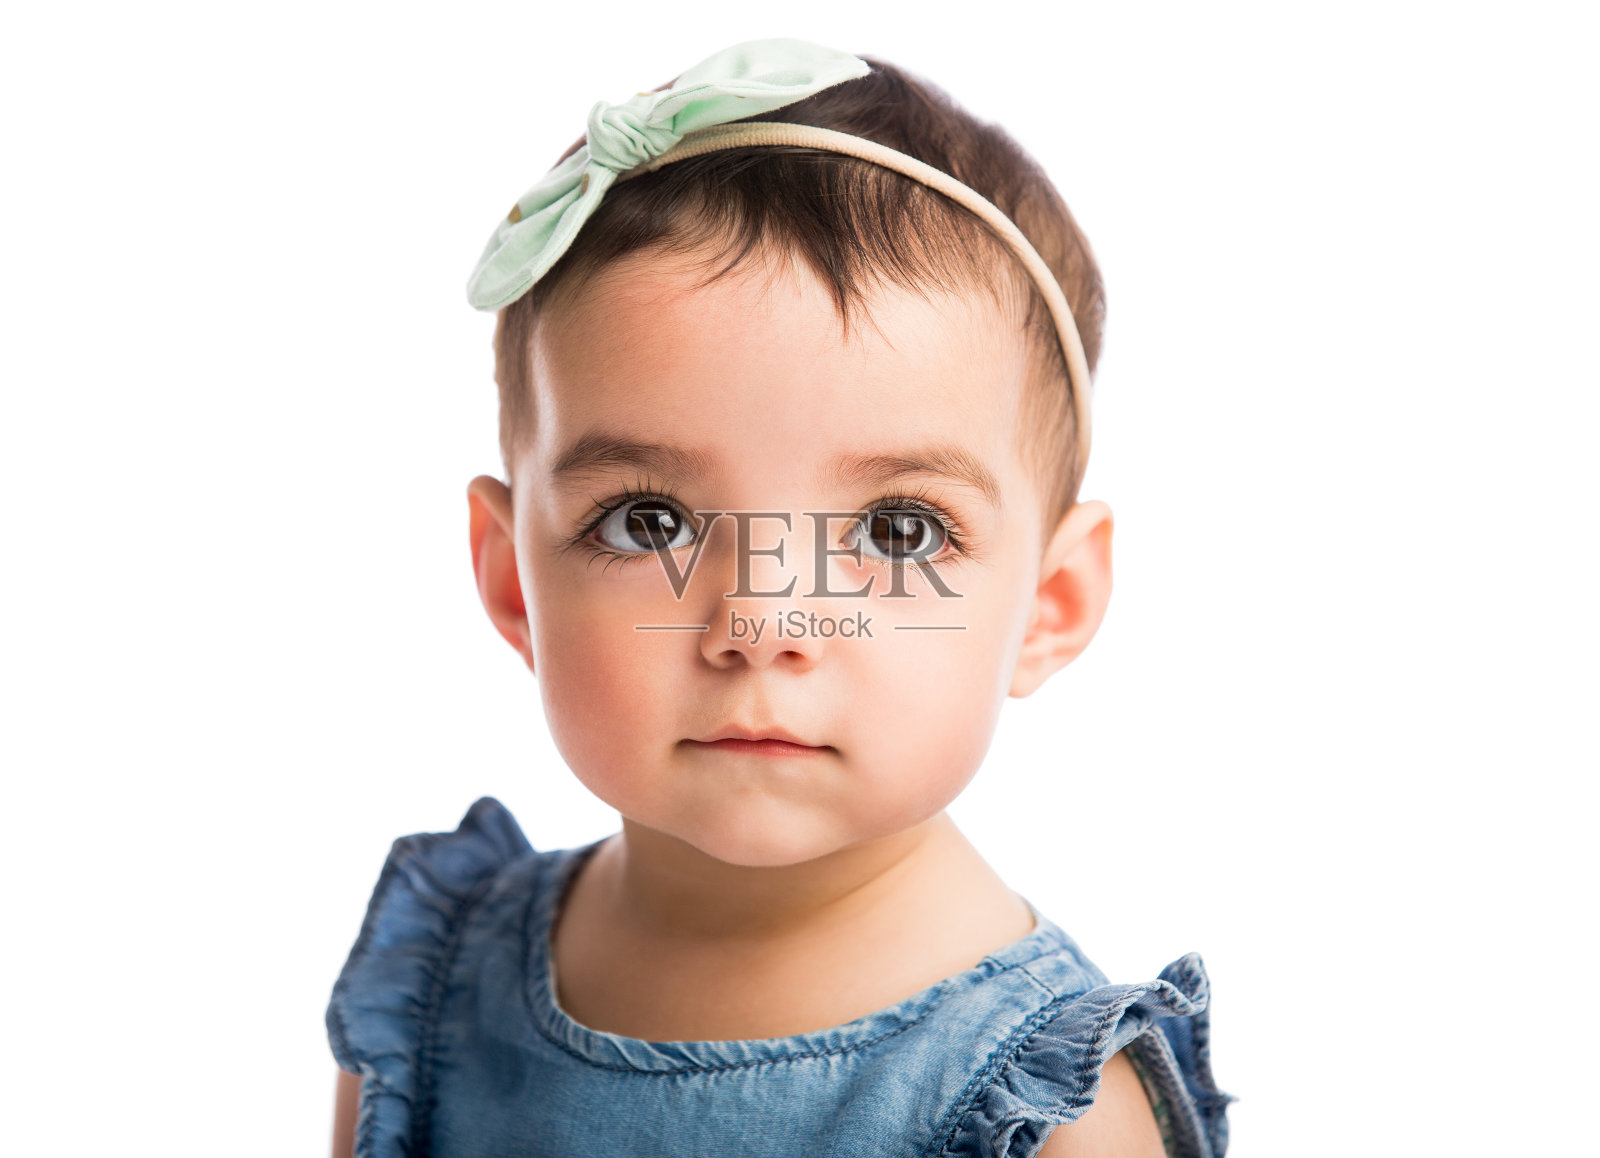 微小的马尾辫-女婴第一种发型 库存照片. 图片 包括有 方式, 婴孩, 马尾辫, 女孩, 敬慕, 相当, 子项 - 79605360